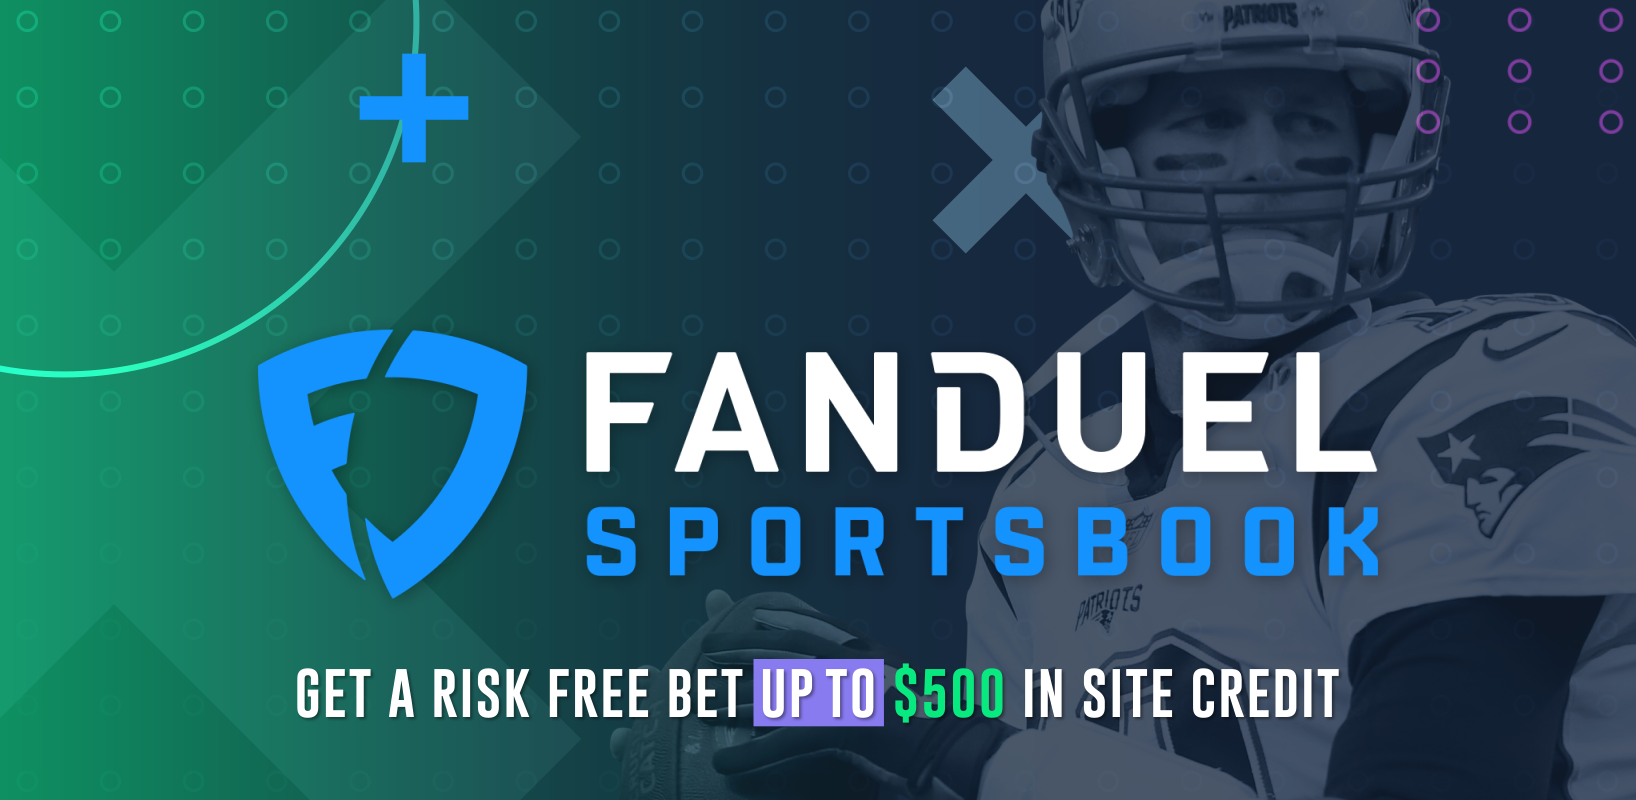 fanduel sportsbook 500 risk free bet